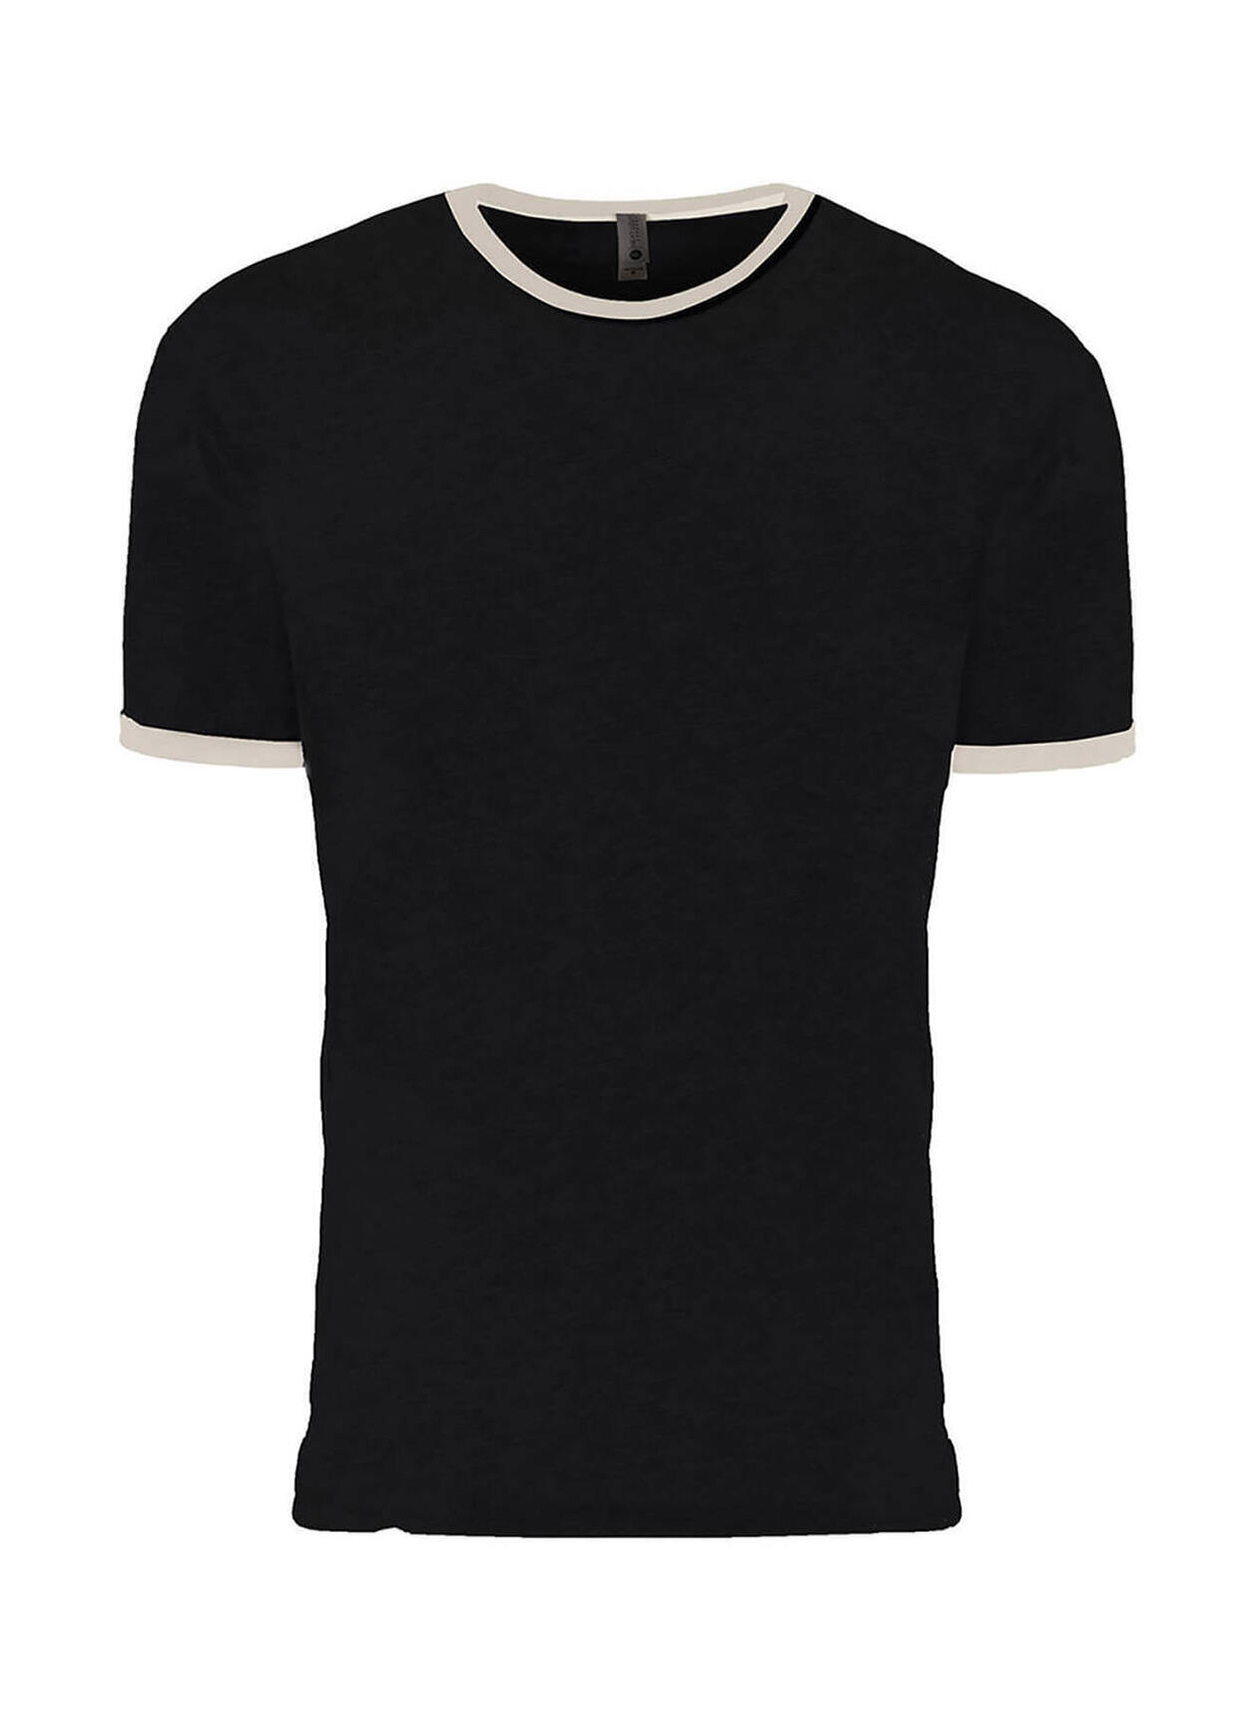 Next Level Men's Black / Natural Unisex Ringer T-Shirt